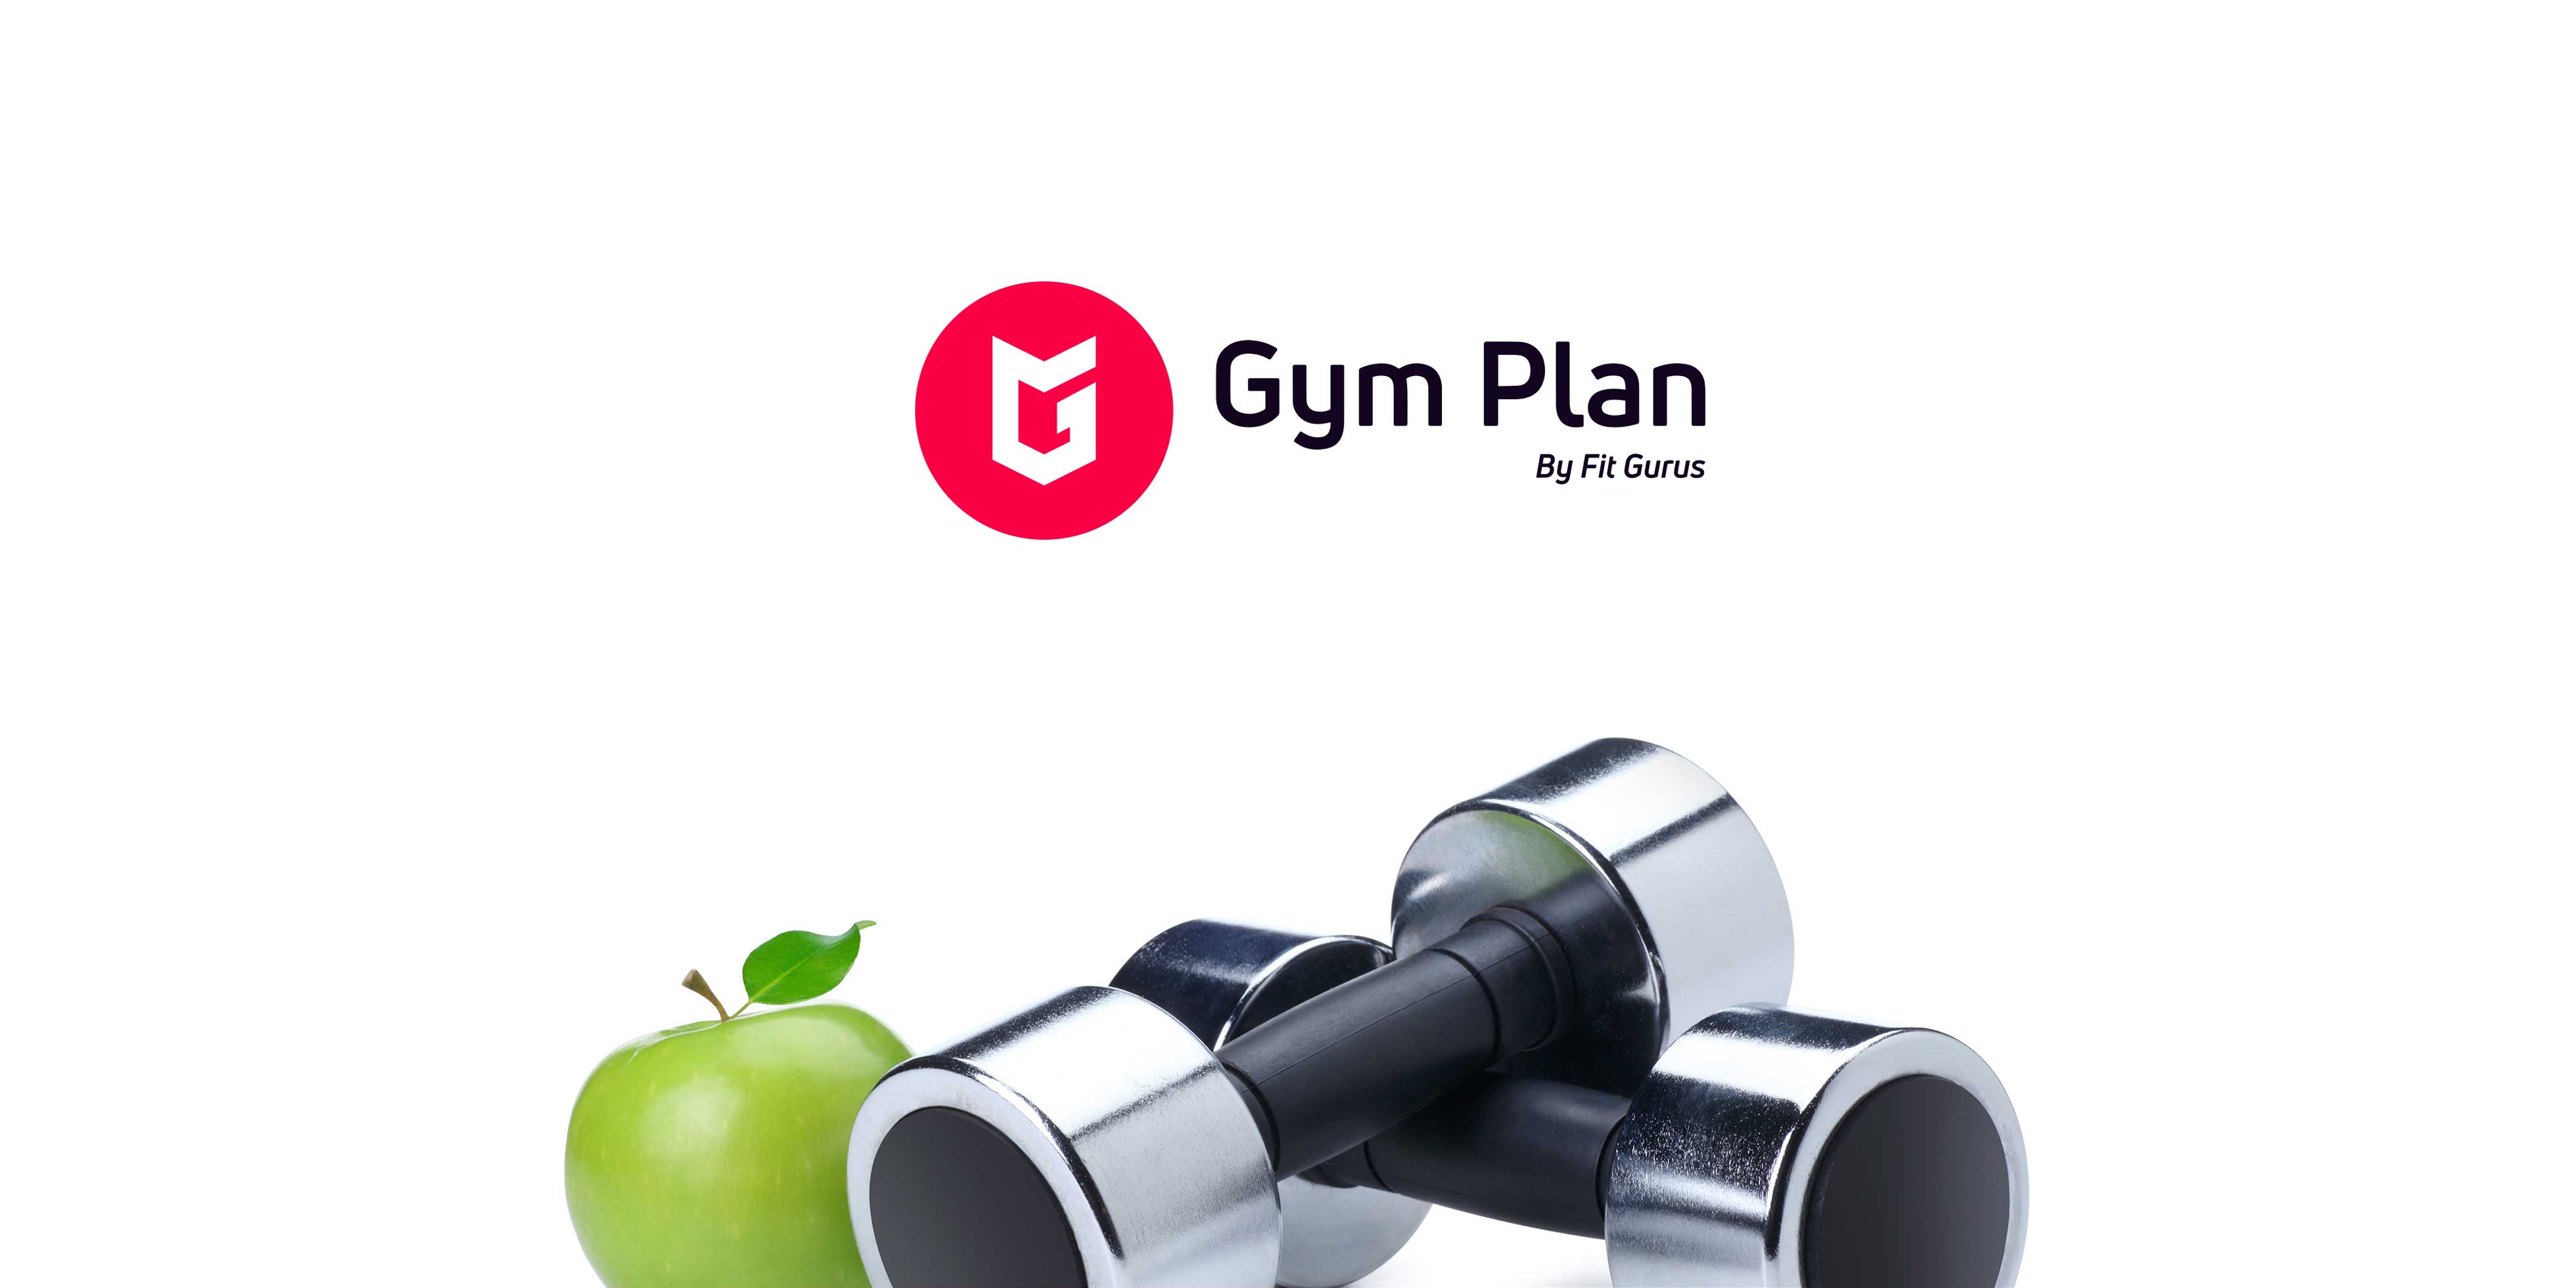 Gym Plan by Fit Gurus